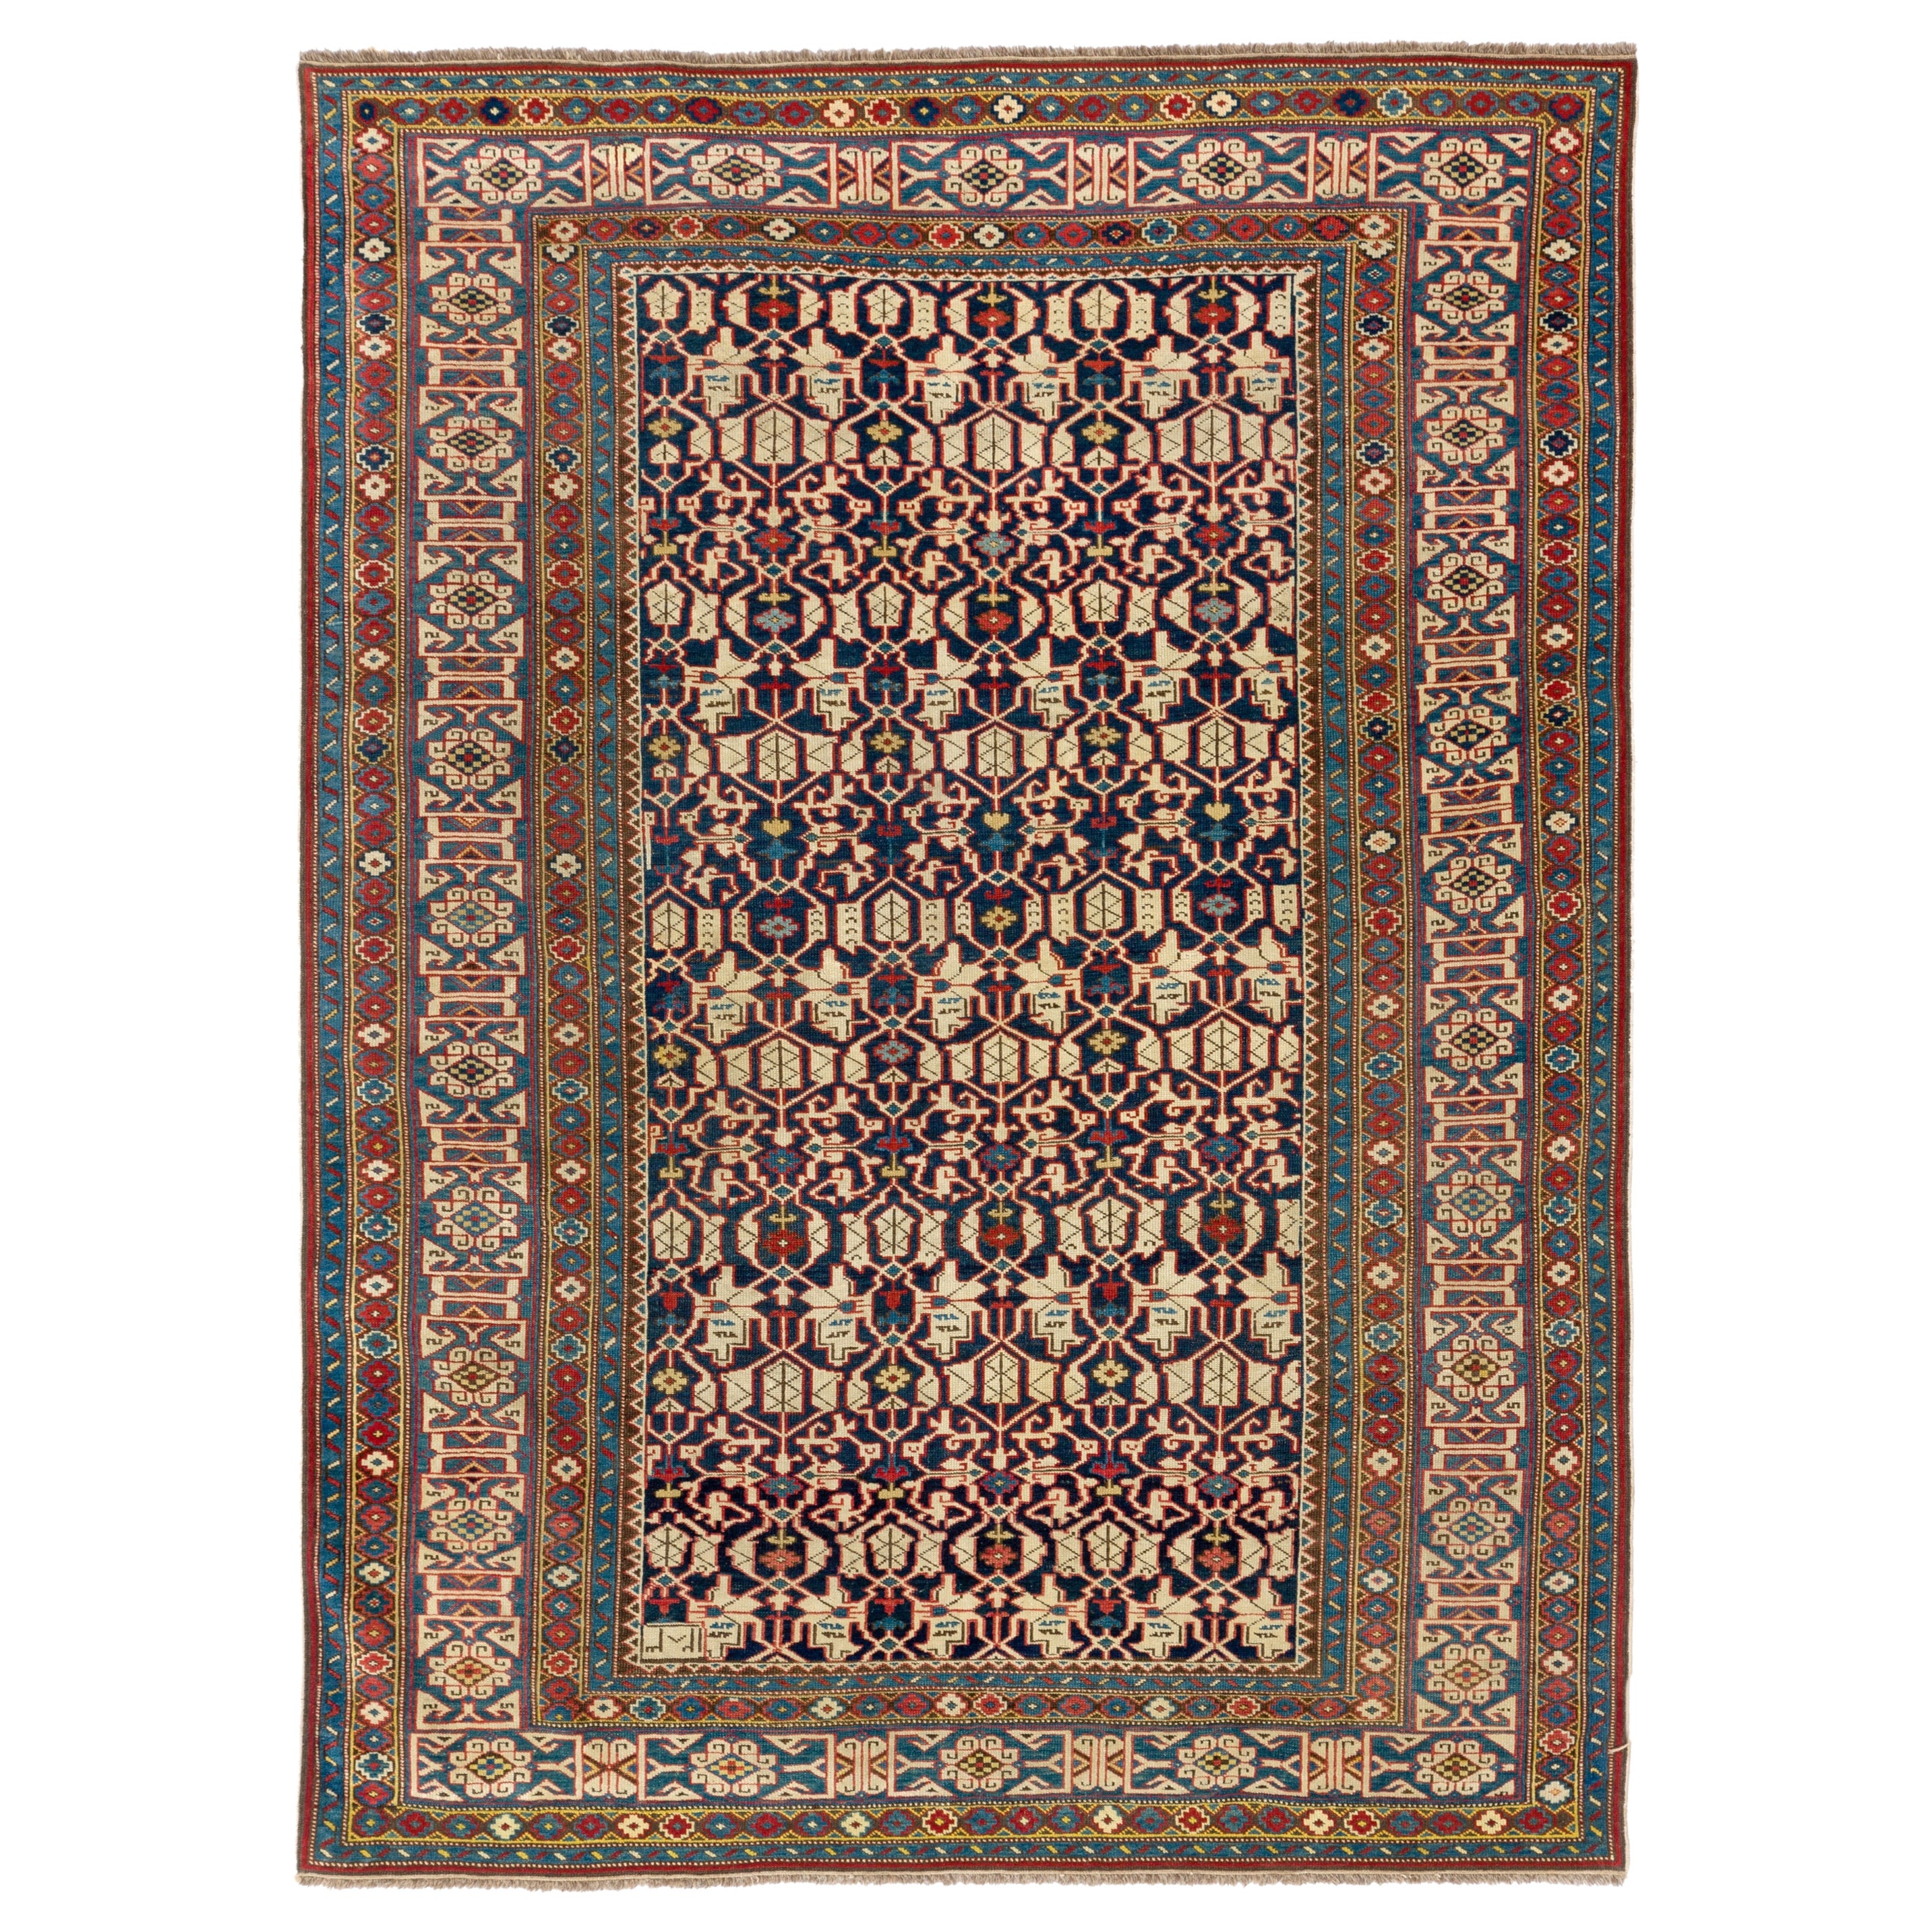 Datiert 1867, feiner antiker kaukasischer Kuba Konaghend Teppich, Top Regal Collectors Teppich